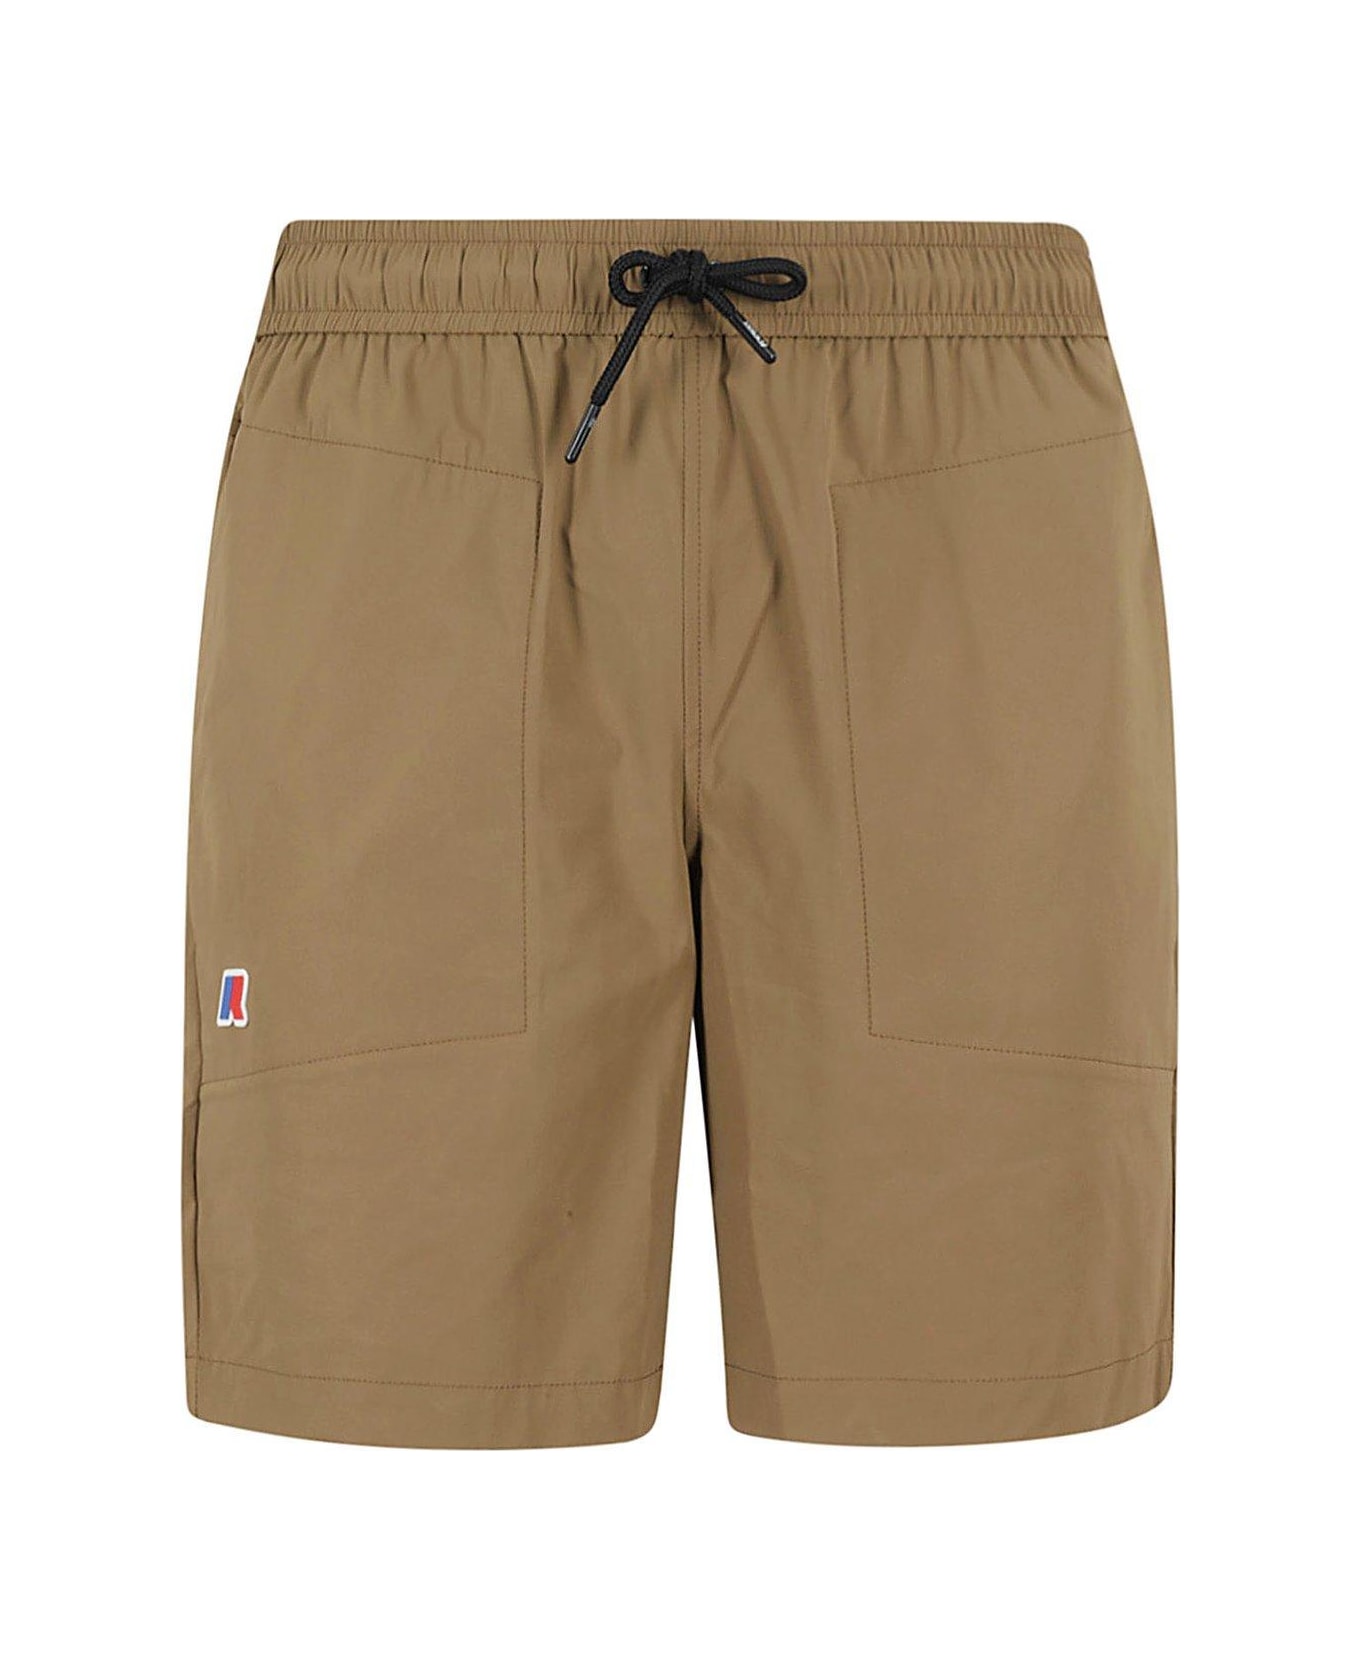 K-Way Elasticated Drawstring Waistband Shorts - Brown Corda ショートパンツ